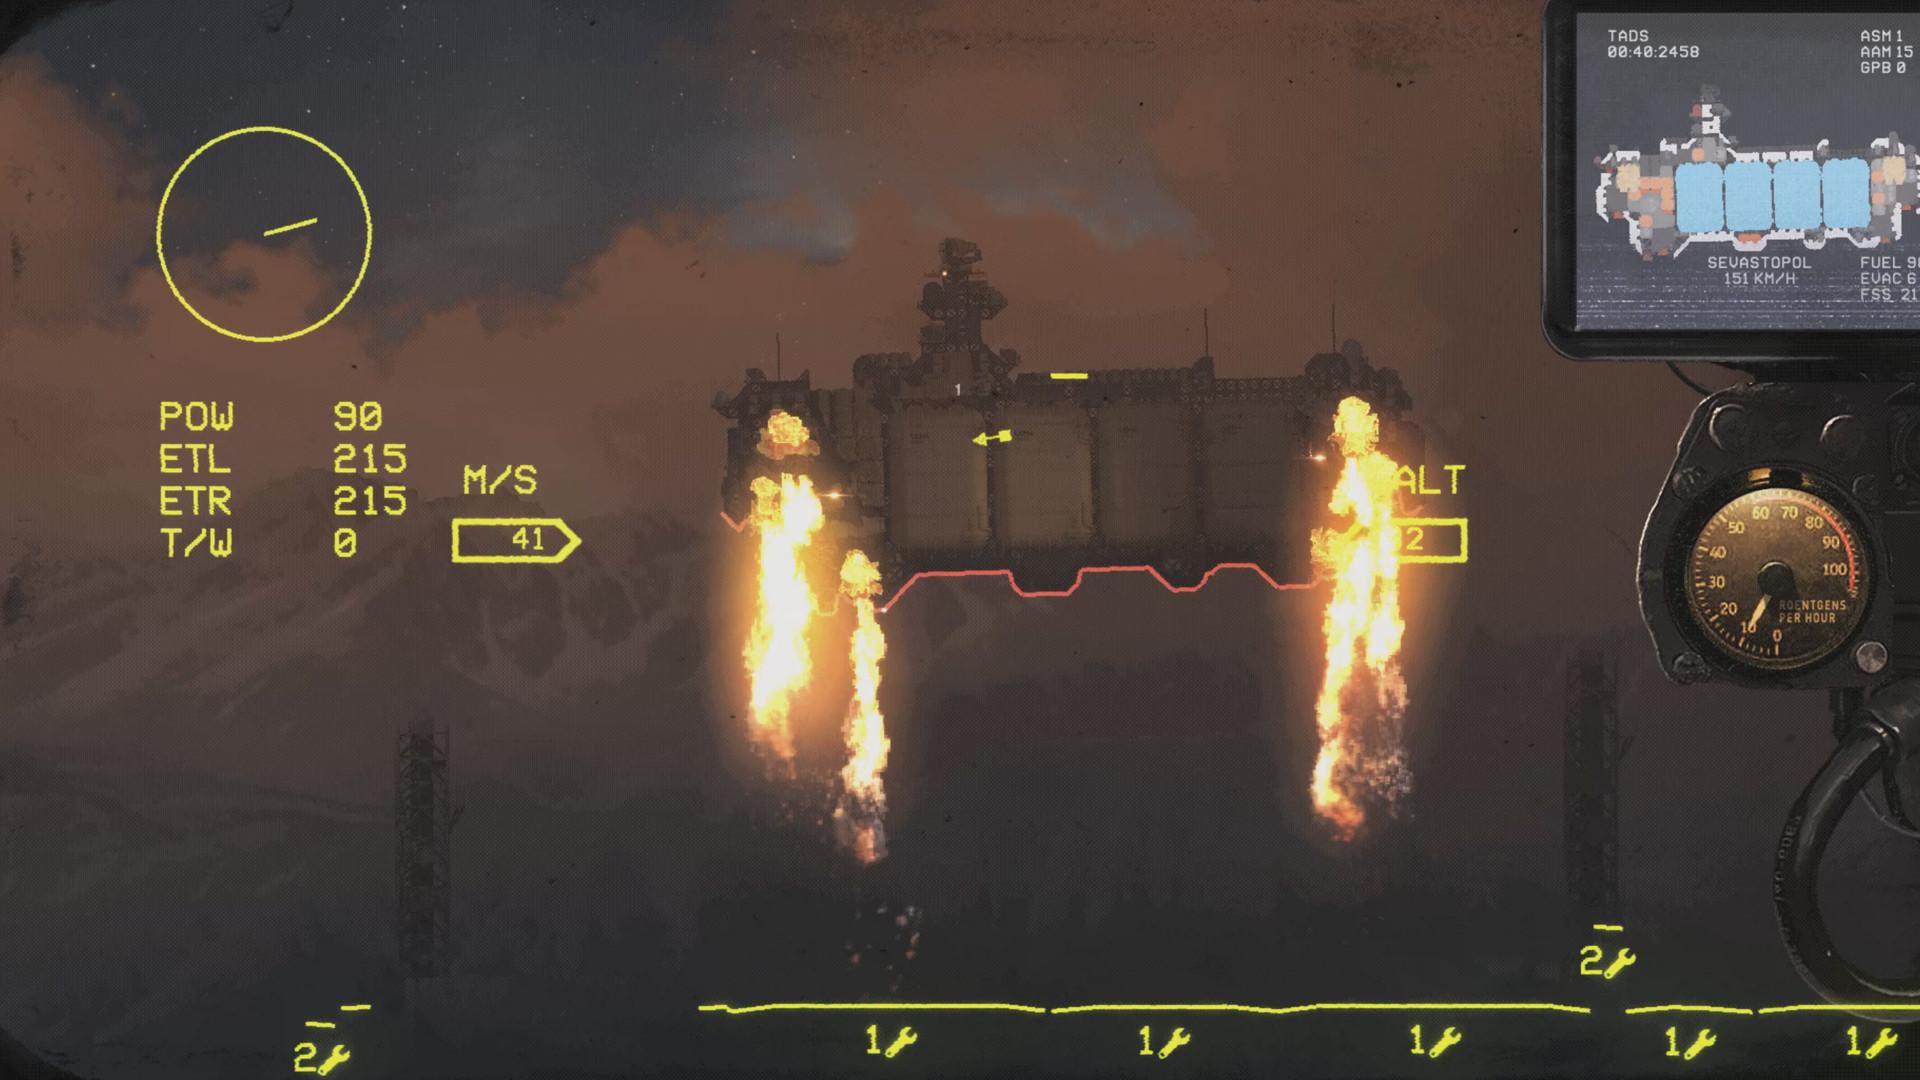 Screenshot №26 from game HighFleet